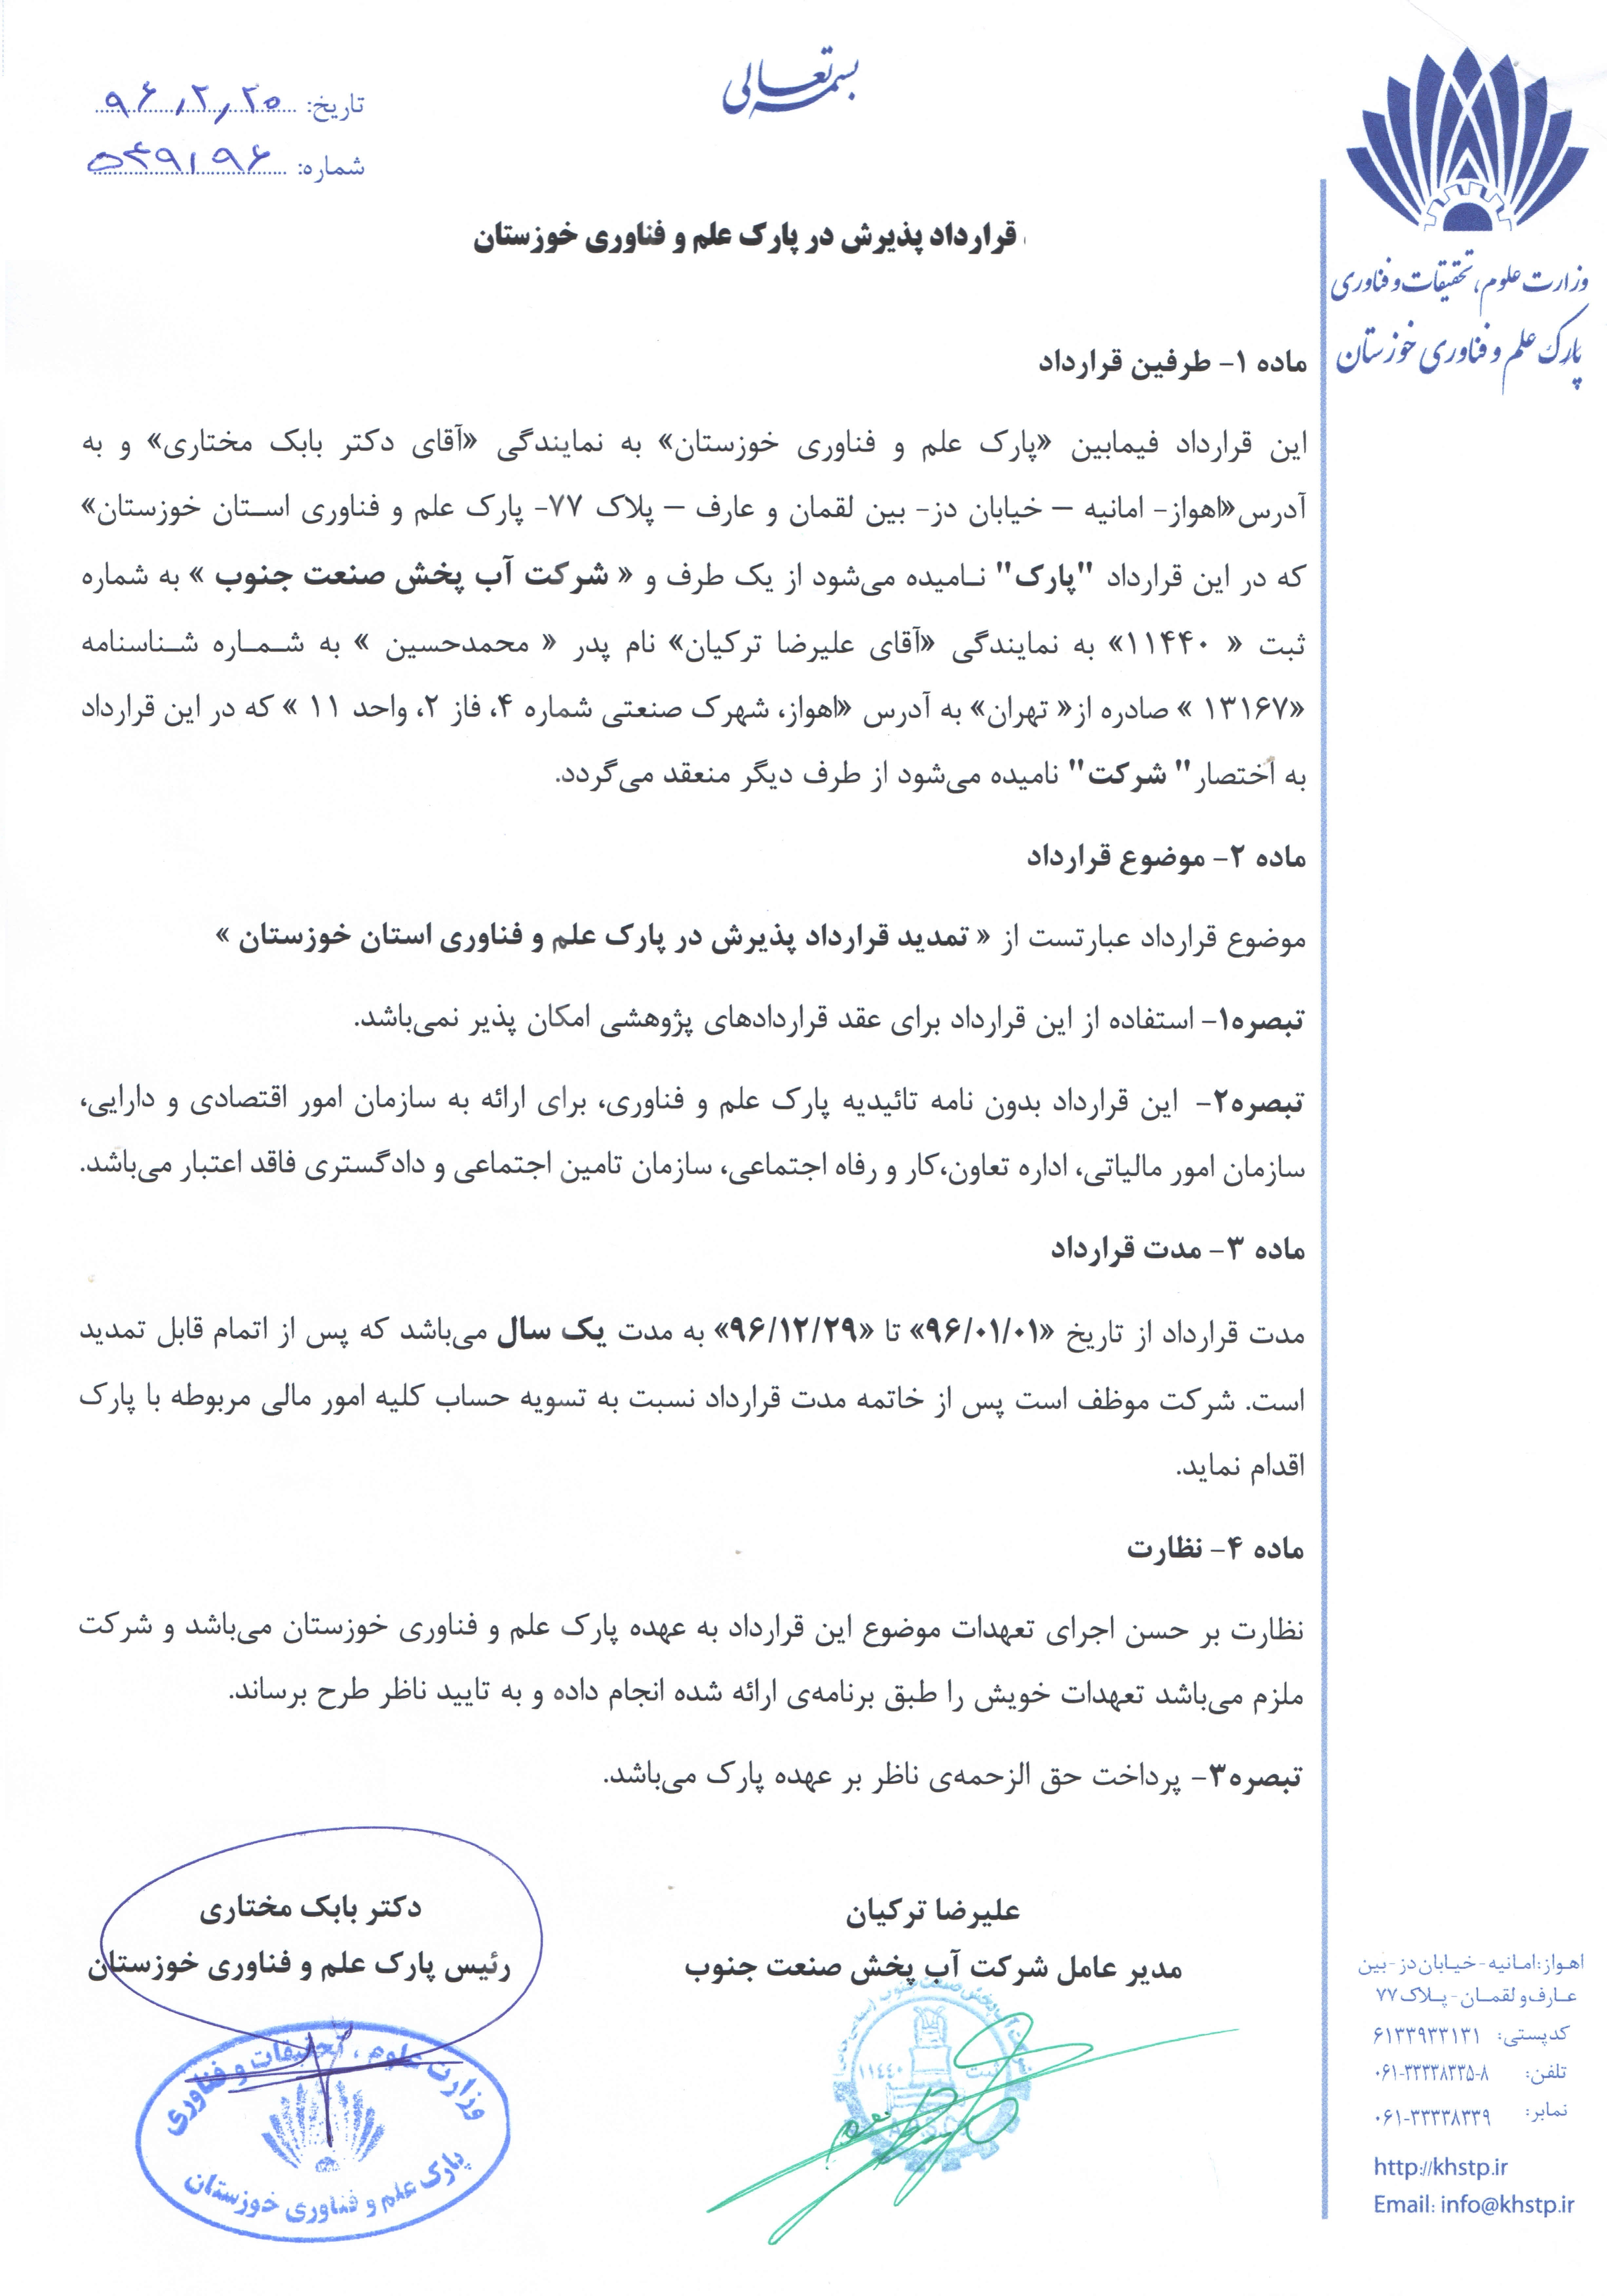 عضویت در پارک علم و فناوری خوزستان